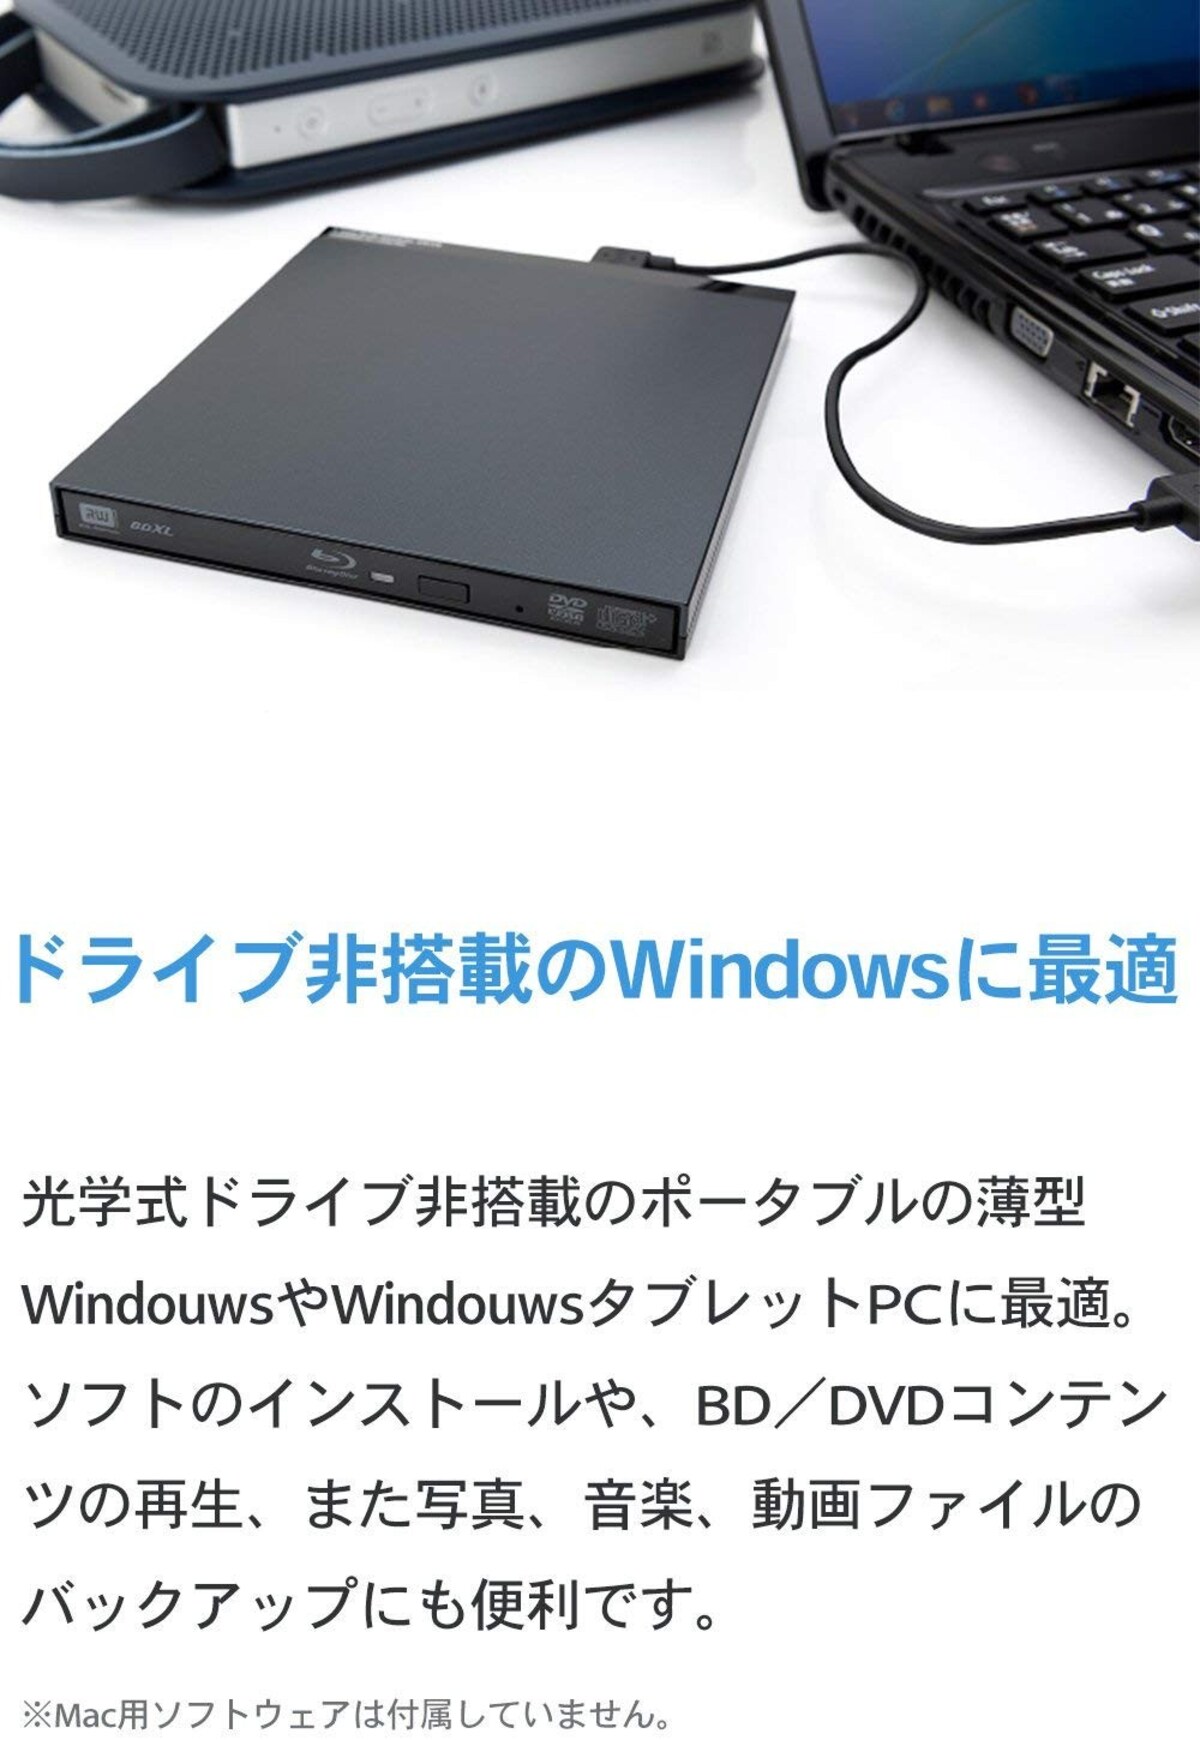  Windows用ポータブルBDドライブ画像2 